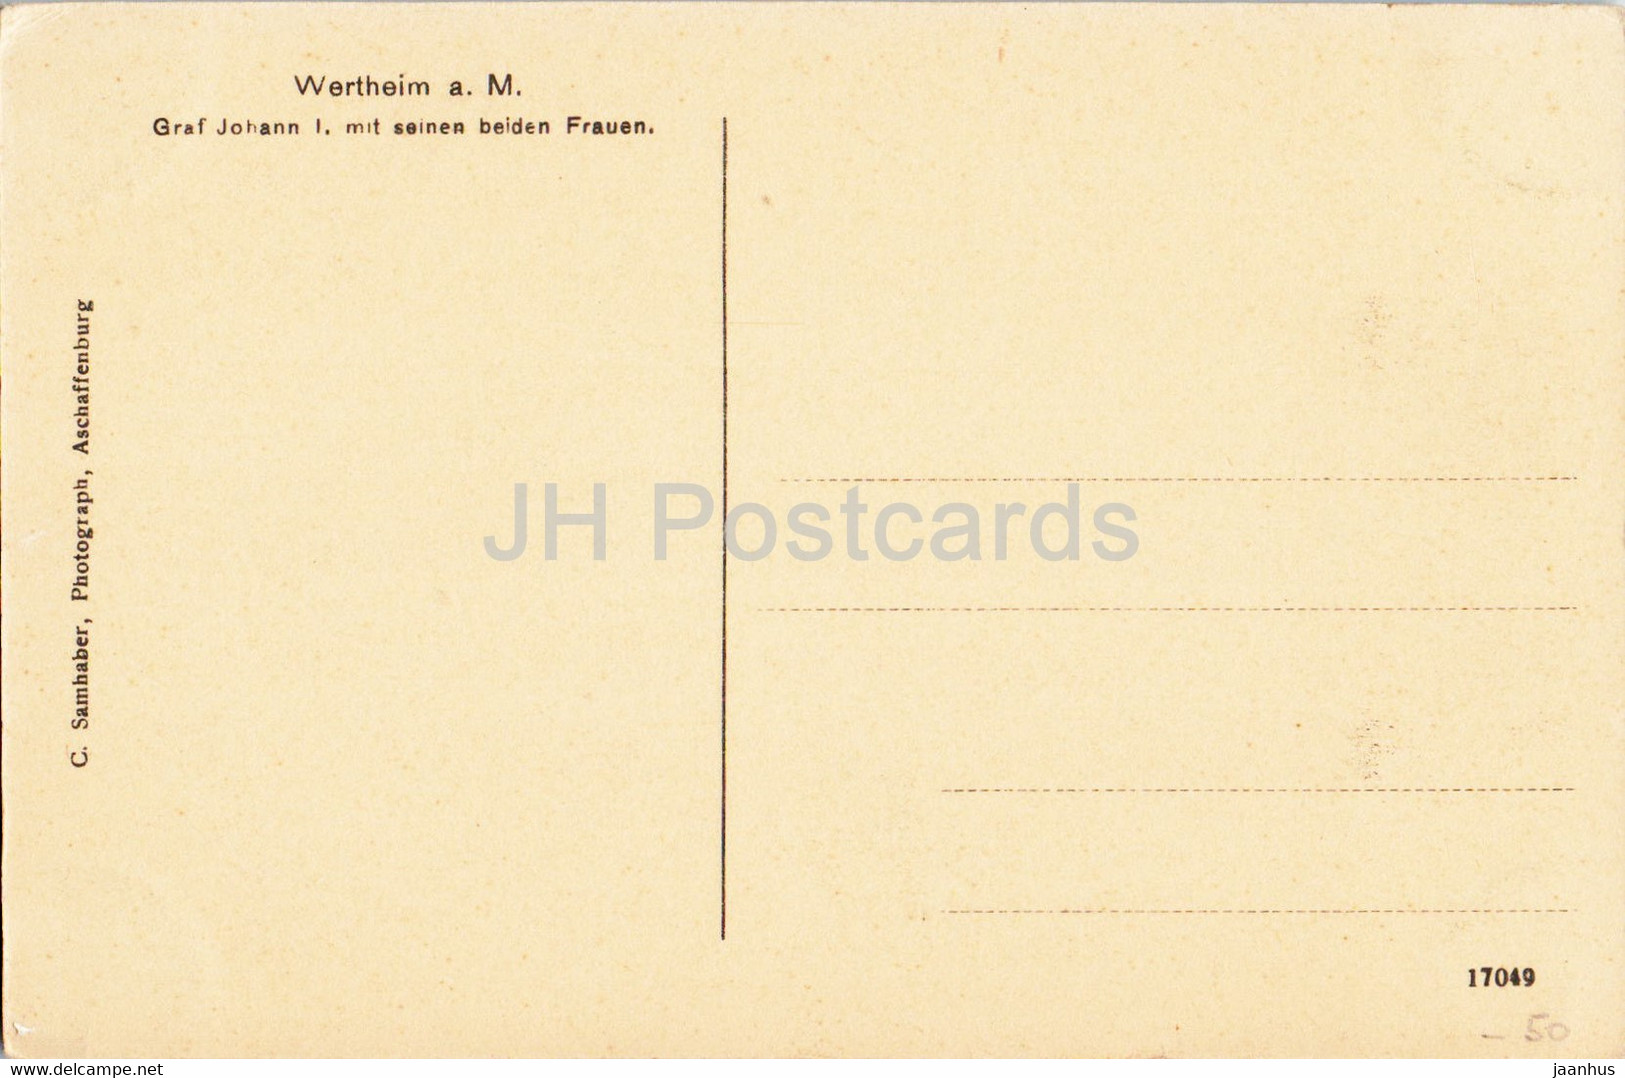 Wertheim A M - Graf Johann I Mit Seinen Beiden Frauen - Old Postcard - Germany - Unused - Wertheim